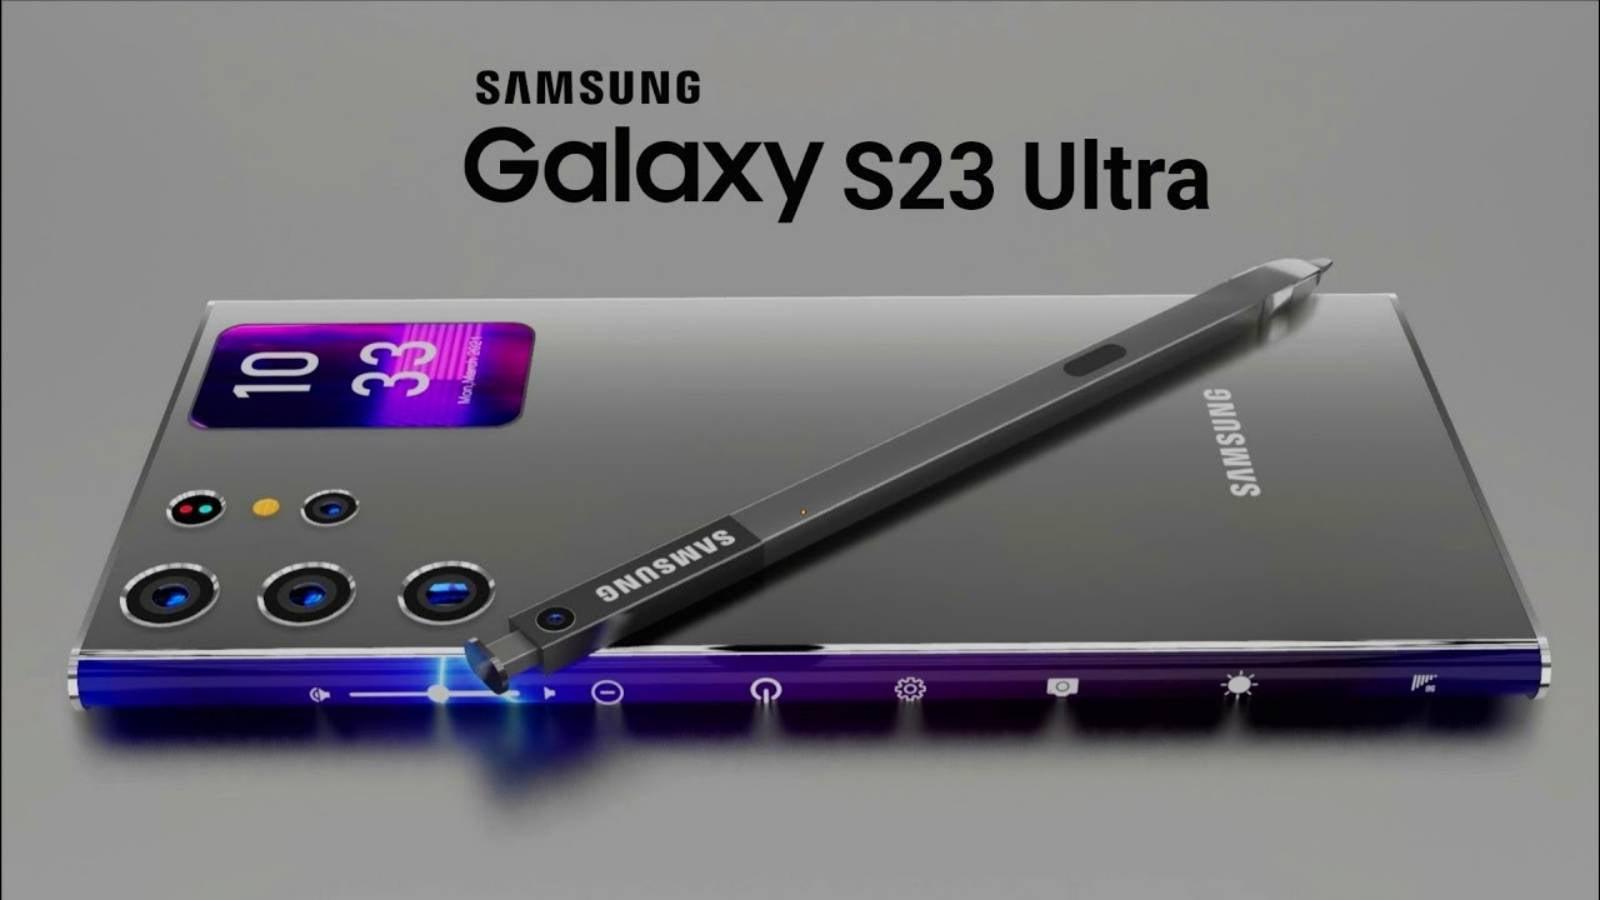 Samsung Galaxy S23 Ultra là chiếc điện thoại đáng mong chờ trong năm 2023 (Ảnh: Internet)